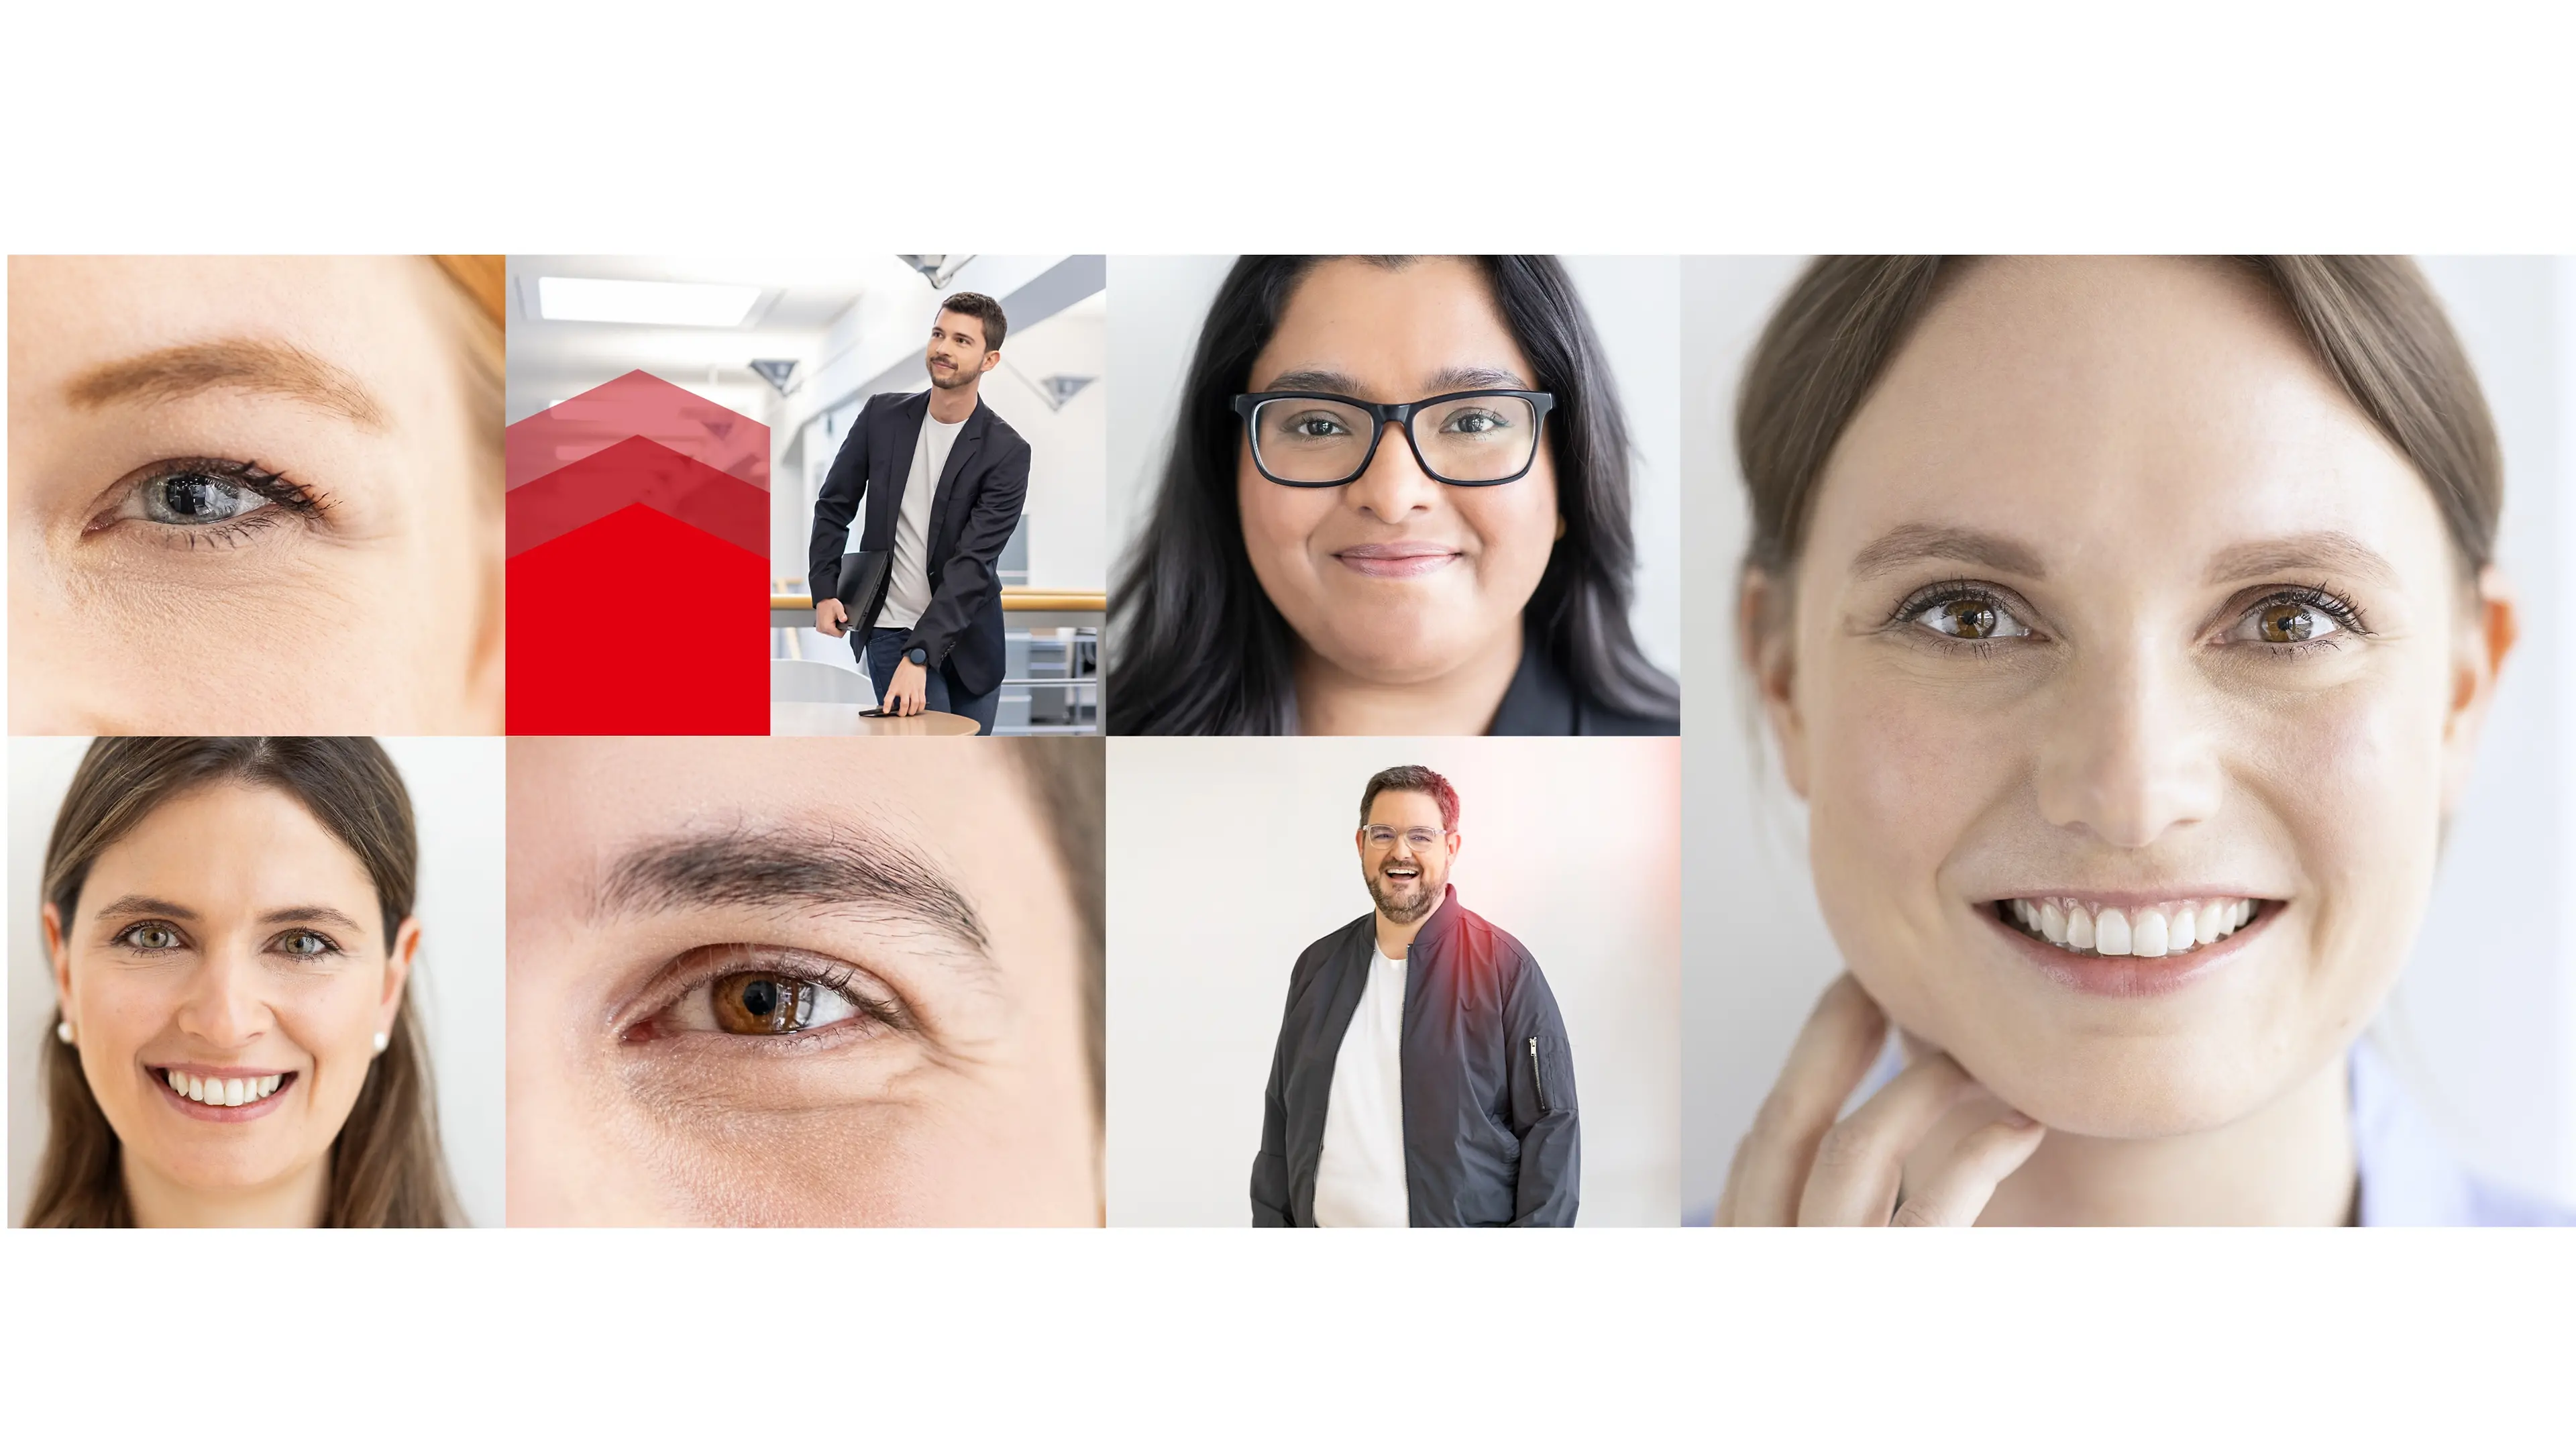 Vários retratos de funcionários da Henkel reunidos em uma colagem